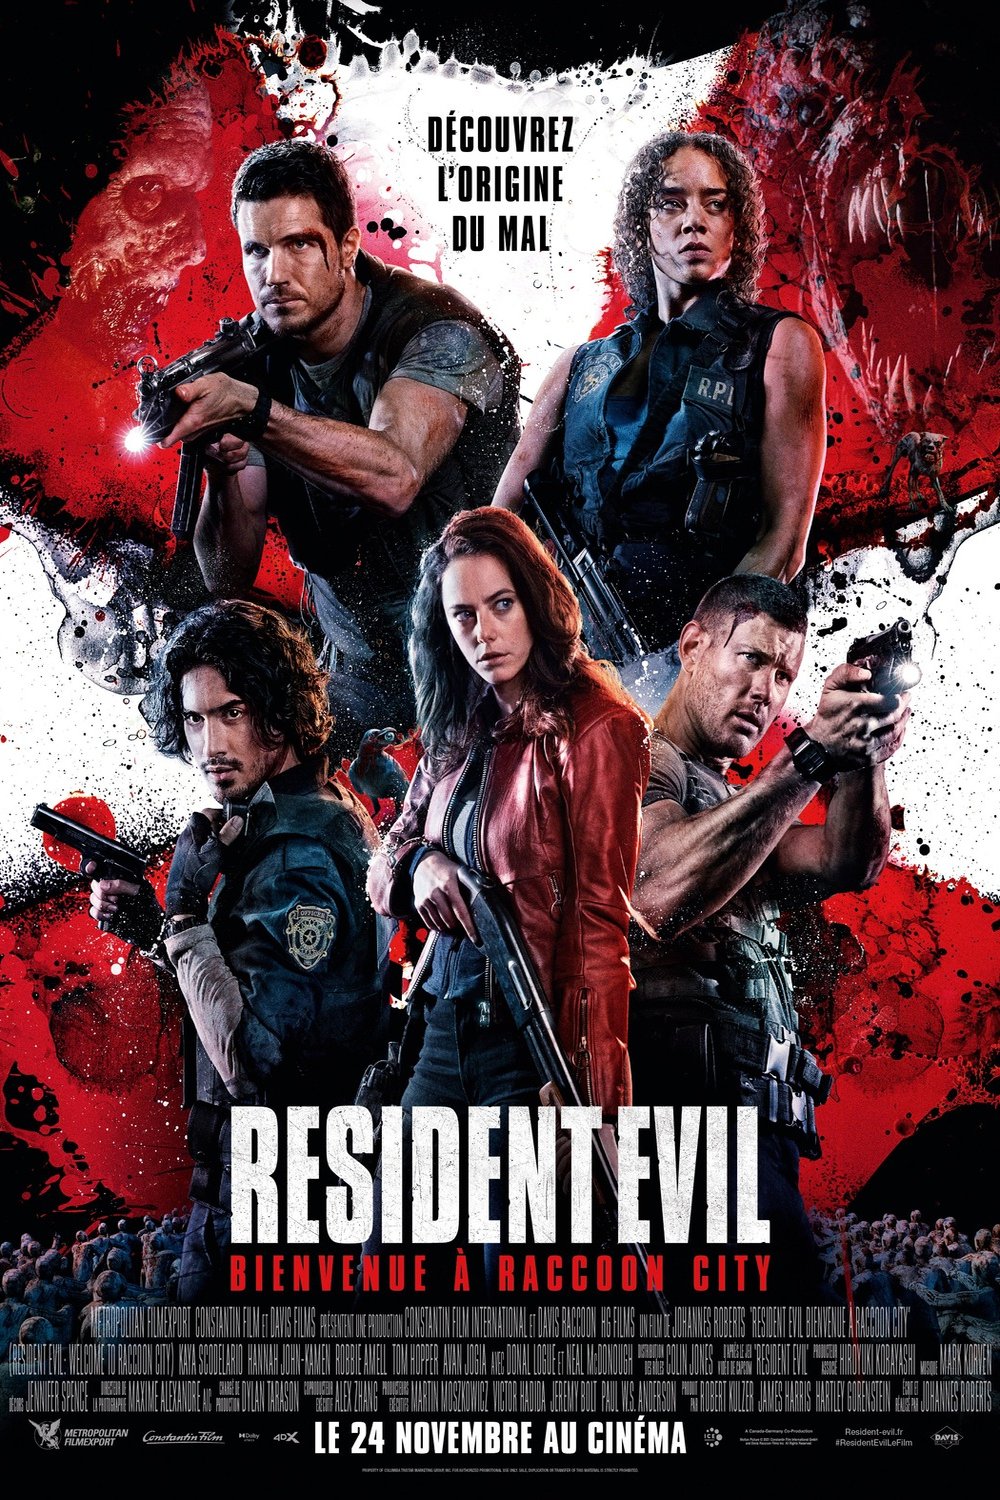 L'affiche du film Resident Evil: Bienvenue à Raccoon City